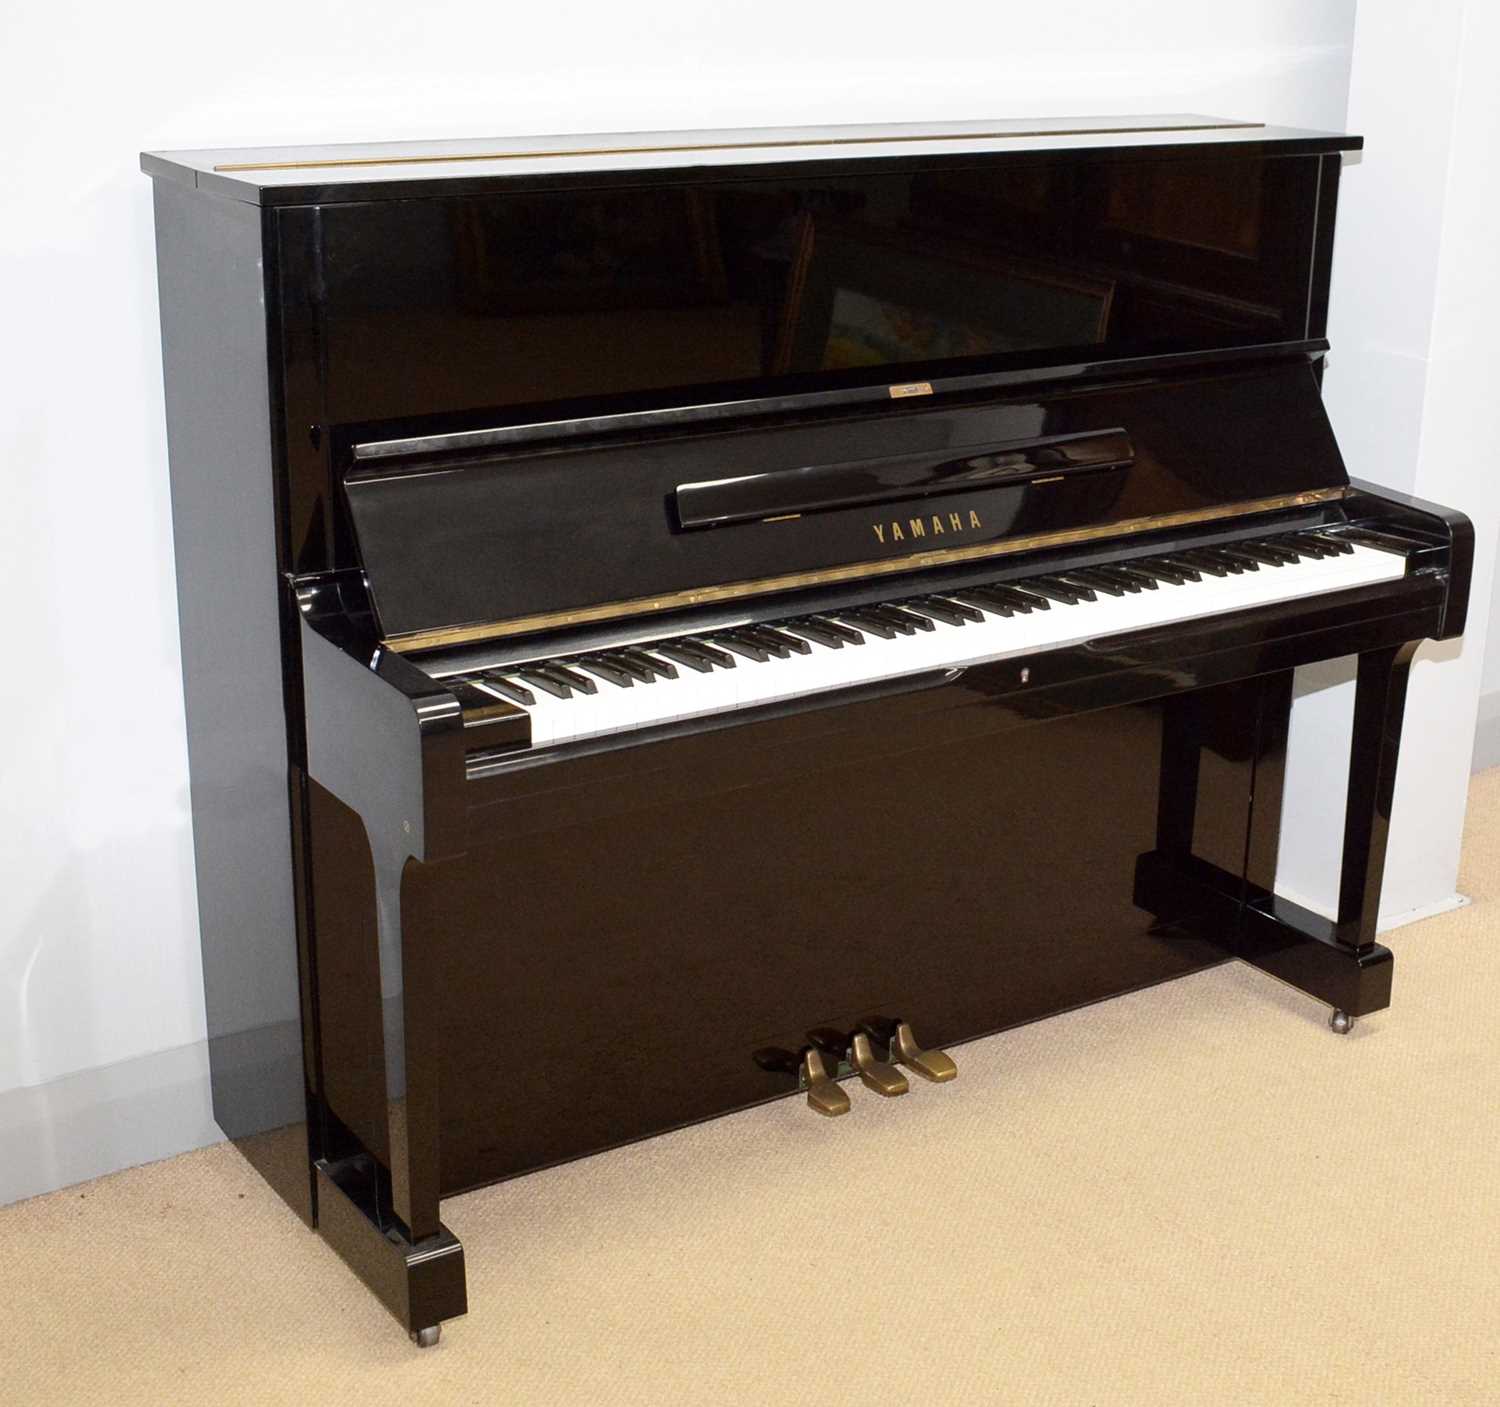 124 - A Yamaha upright piano.